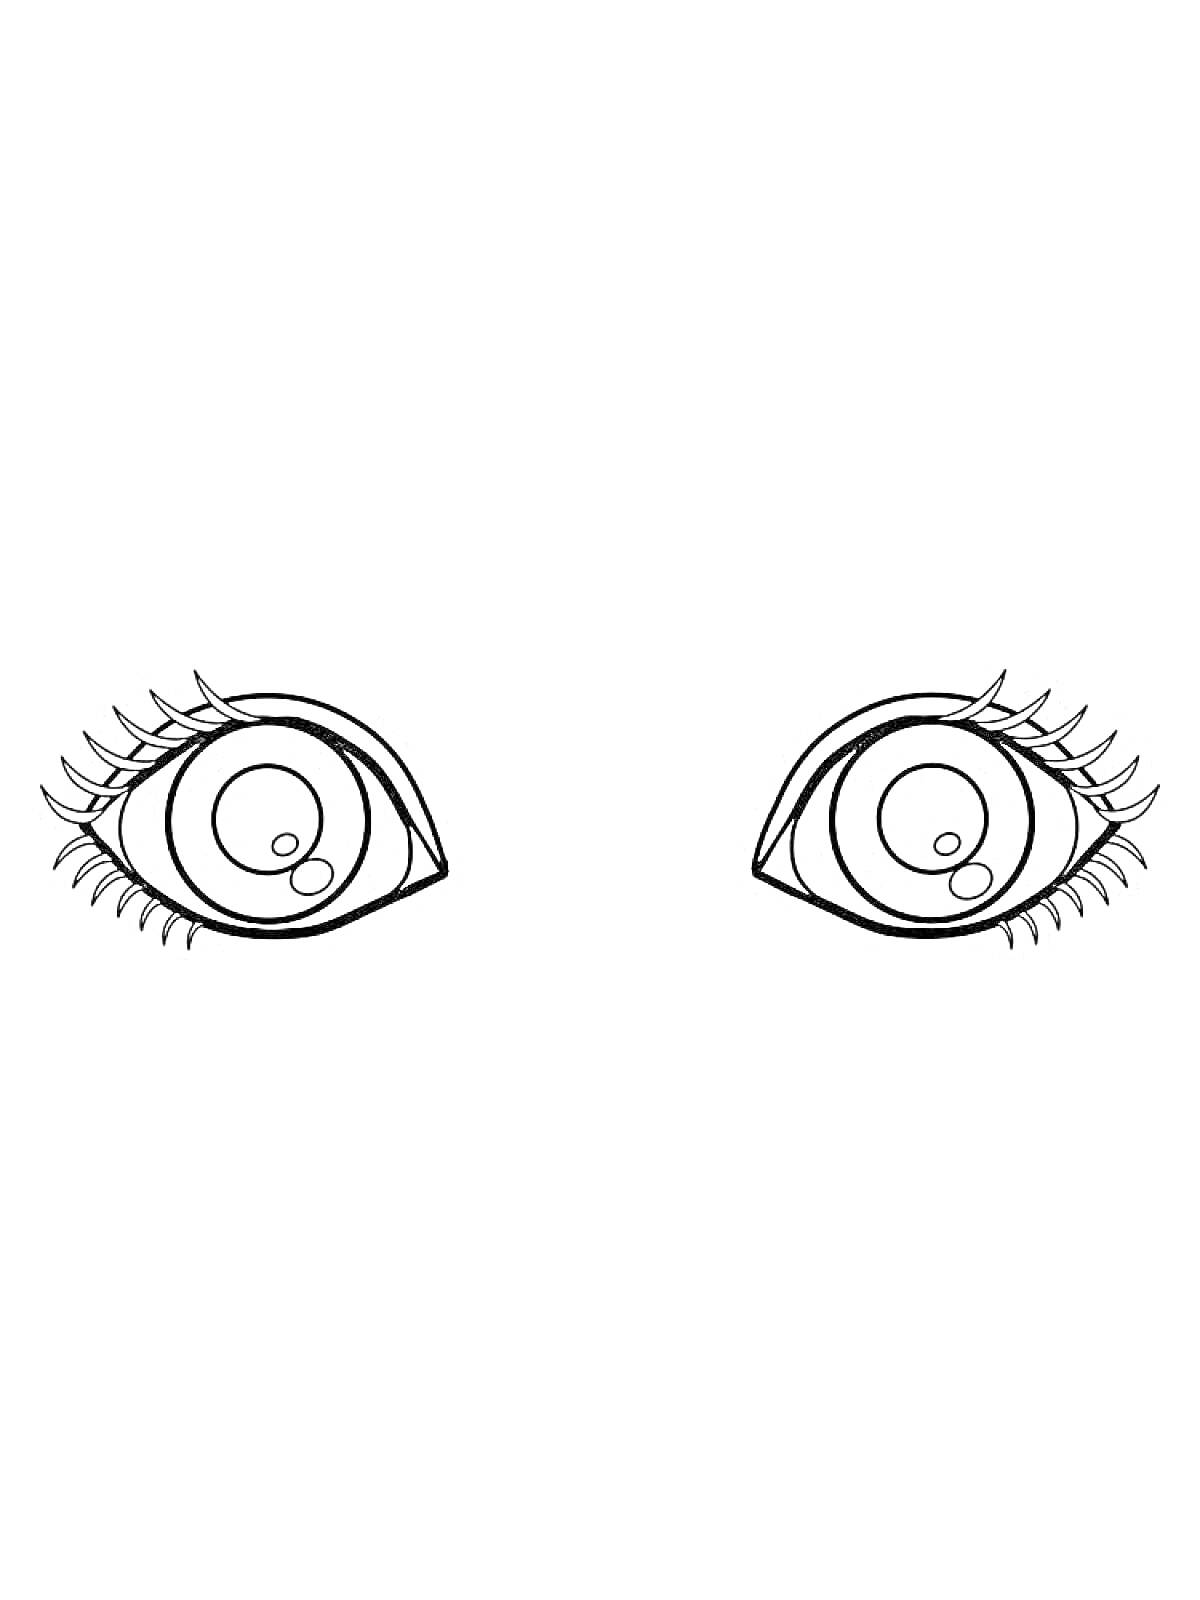 Раскраска Раскраска с изображением пары глаз с длинными ресницами и зрачками